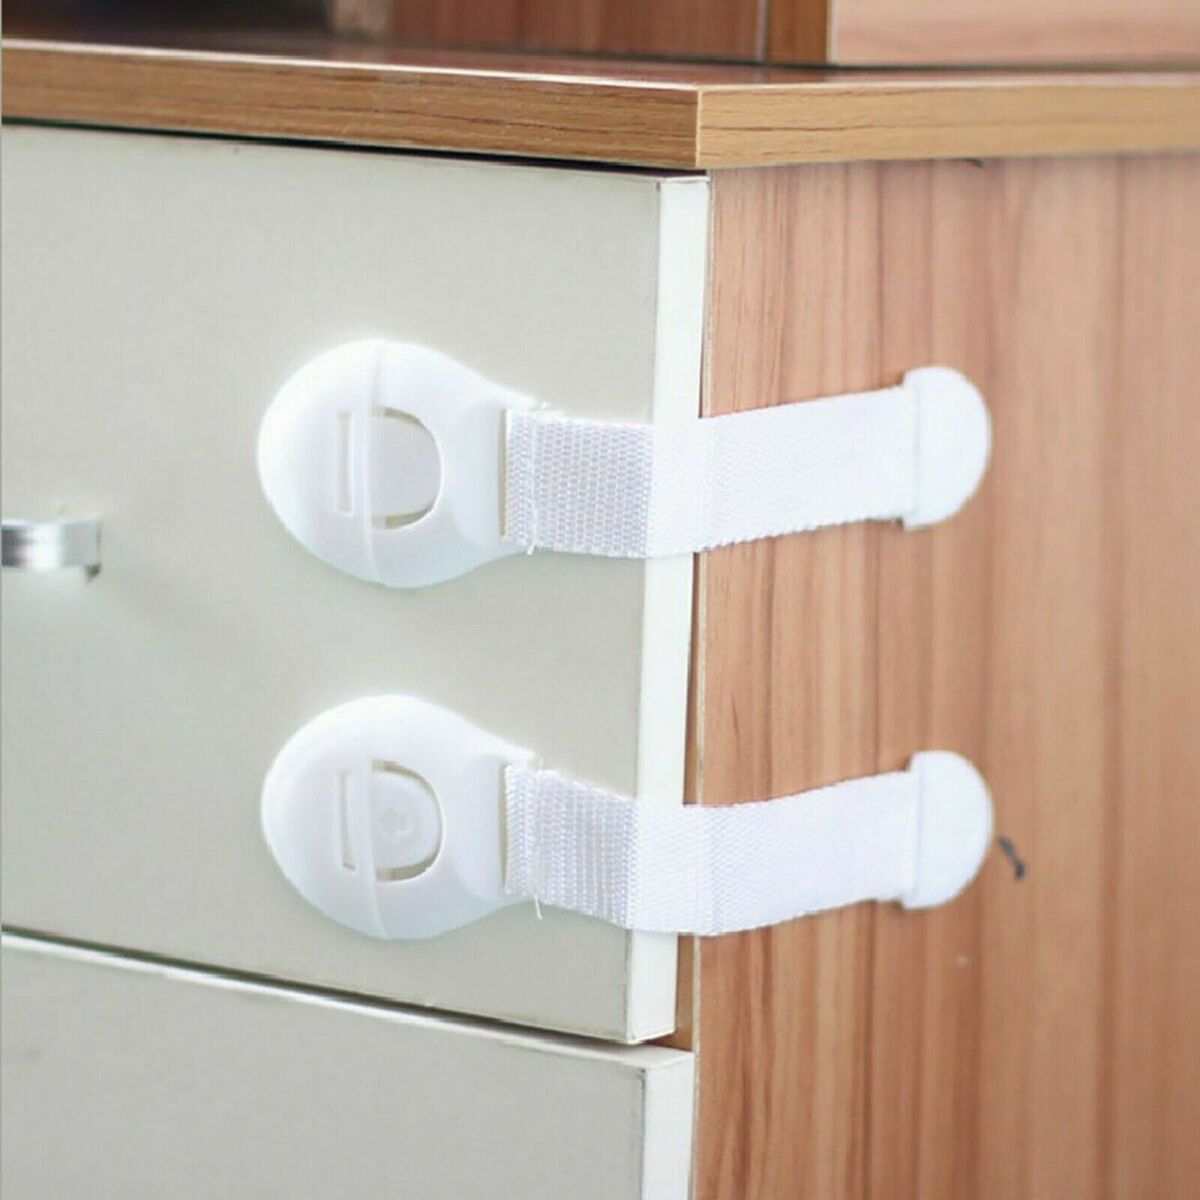 Baby Safety Door Lock cupboard Cabinet Drawer 3m tape.Pet Child locks